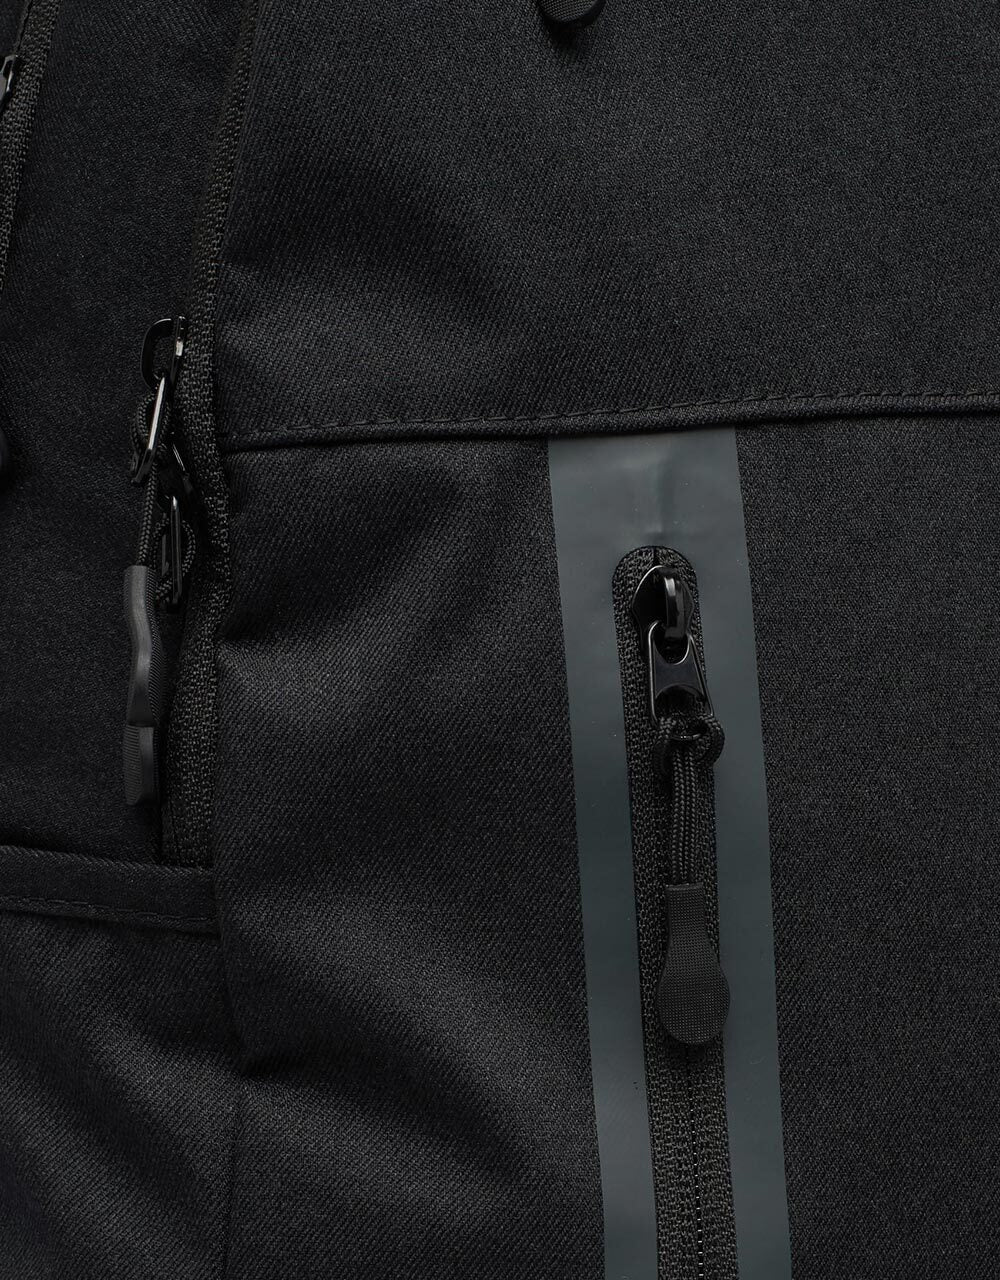 Nike SB Elemental Backpack - Black/Black/Anthracite